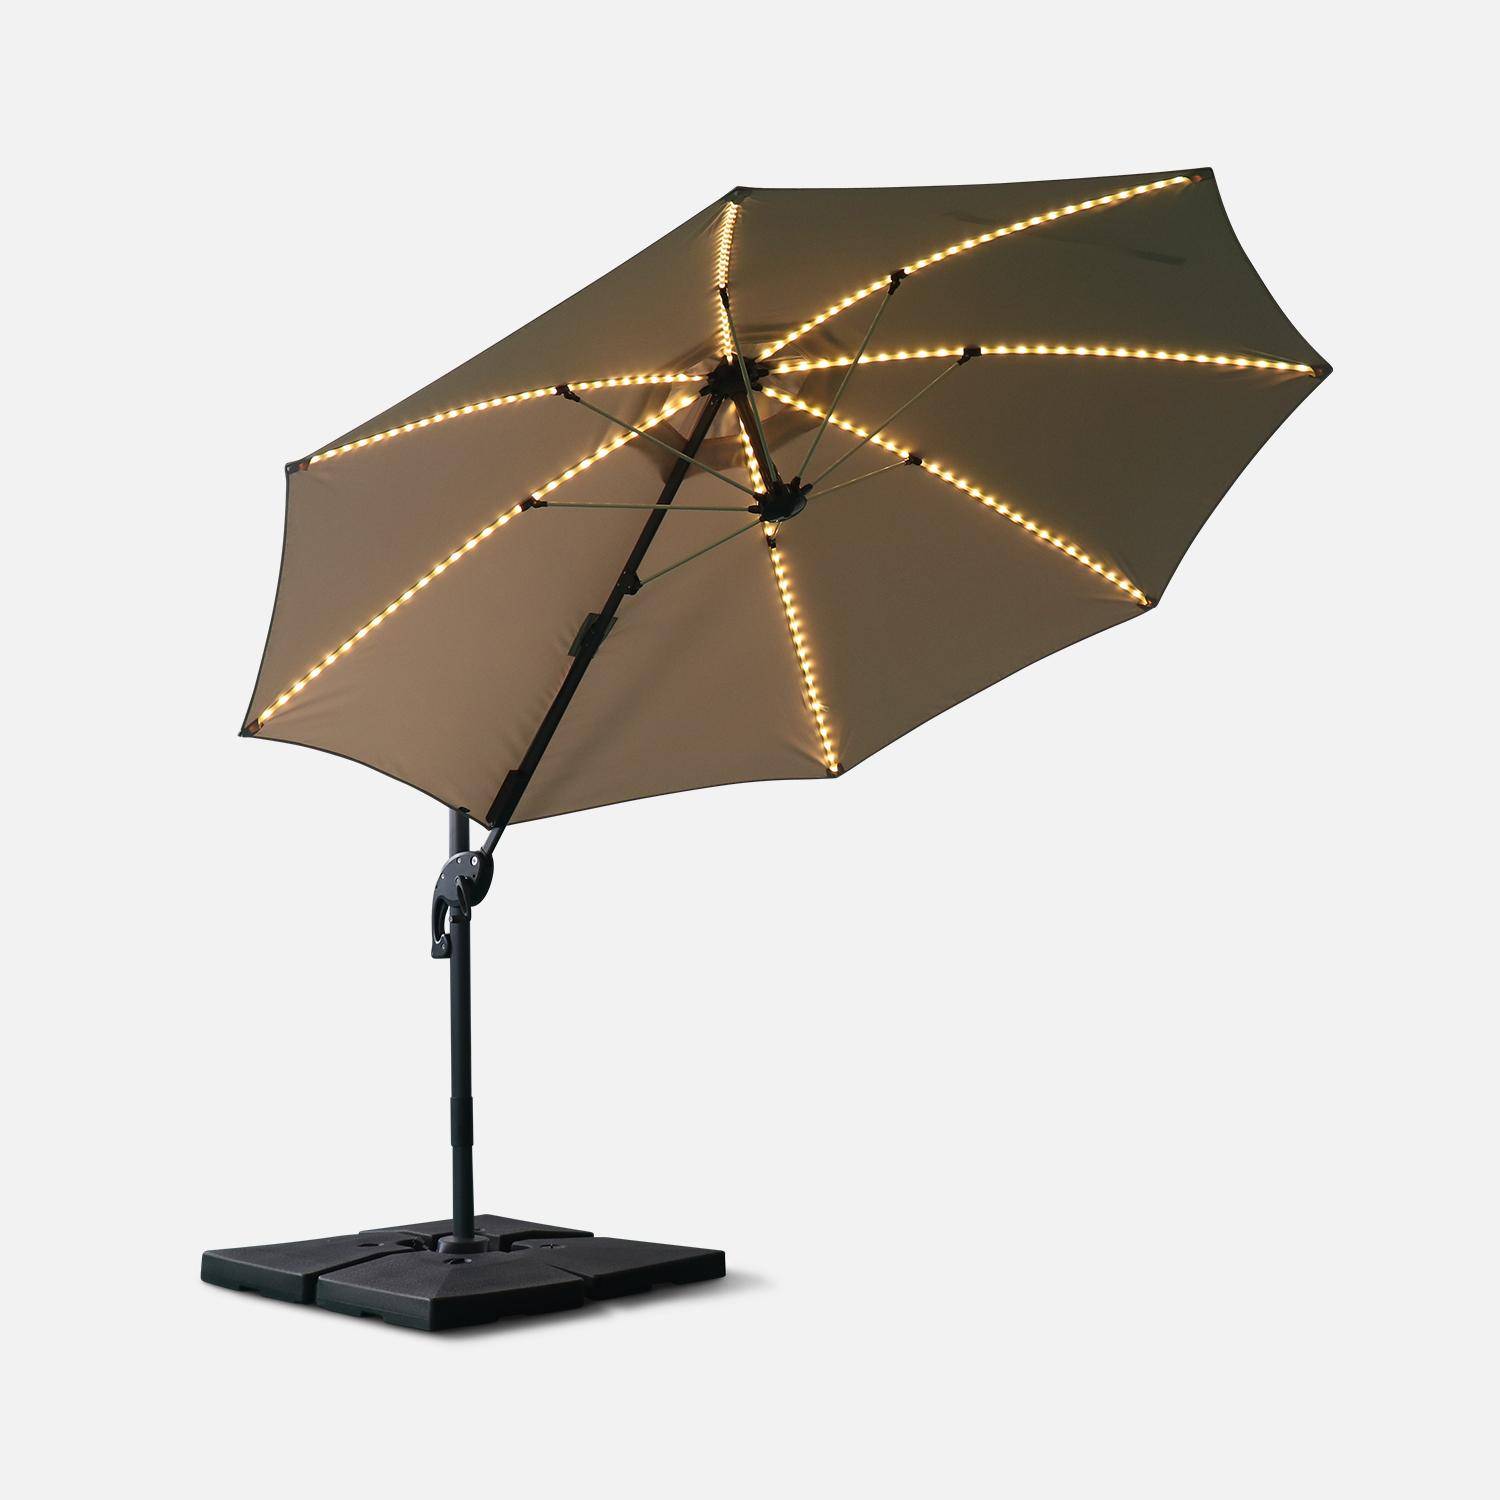 Ombrellone led tondo decentrato Ø300 cm - Dinard - Beige - ombrellone decentrato, basculante, ribaltabile e girevole 360°, stecche in fibra di vetro Photo3